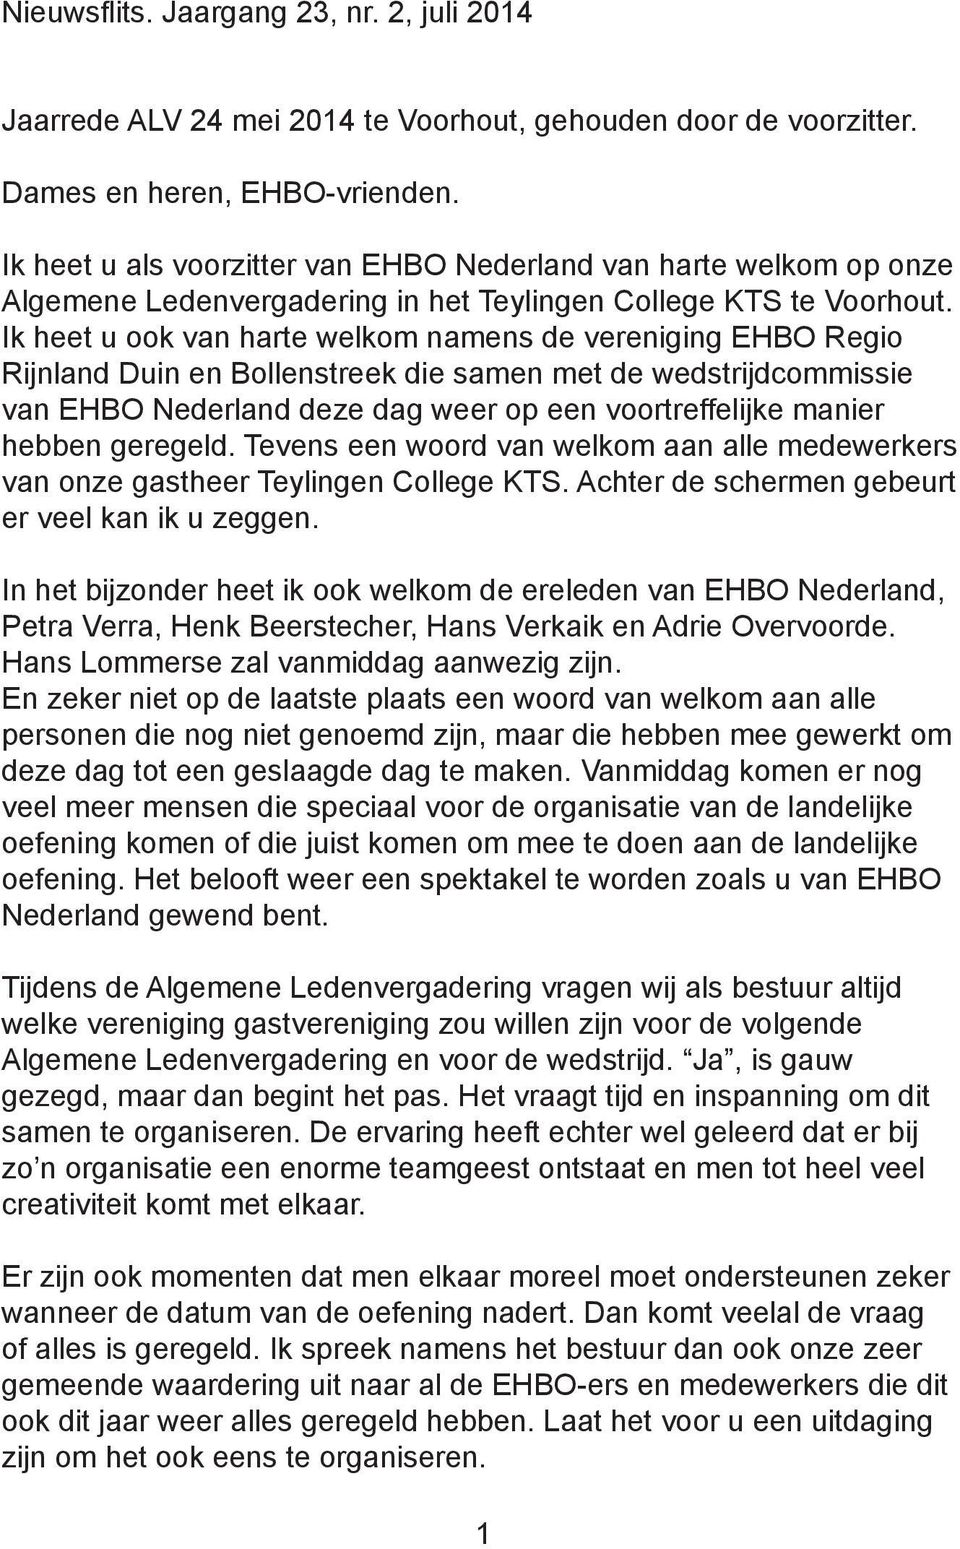 Ik heet u ook van harte welkom namens de vereniging EHBO Regio Rijnland Duin en Bollenstreek die samen met de wedstrijdcommissie van EHBO Nederland deze dag weer op een voortreffelijke manier hebben